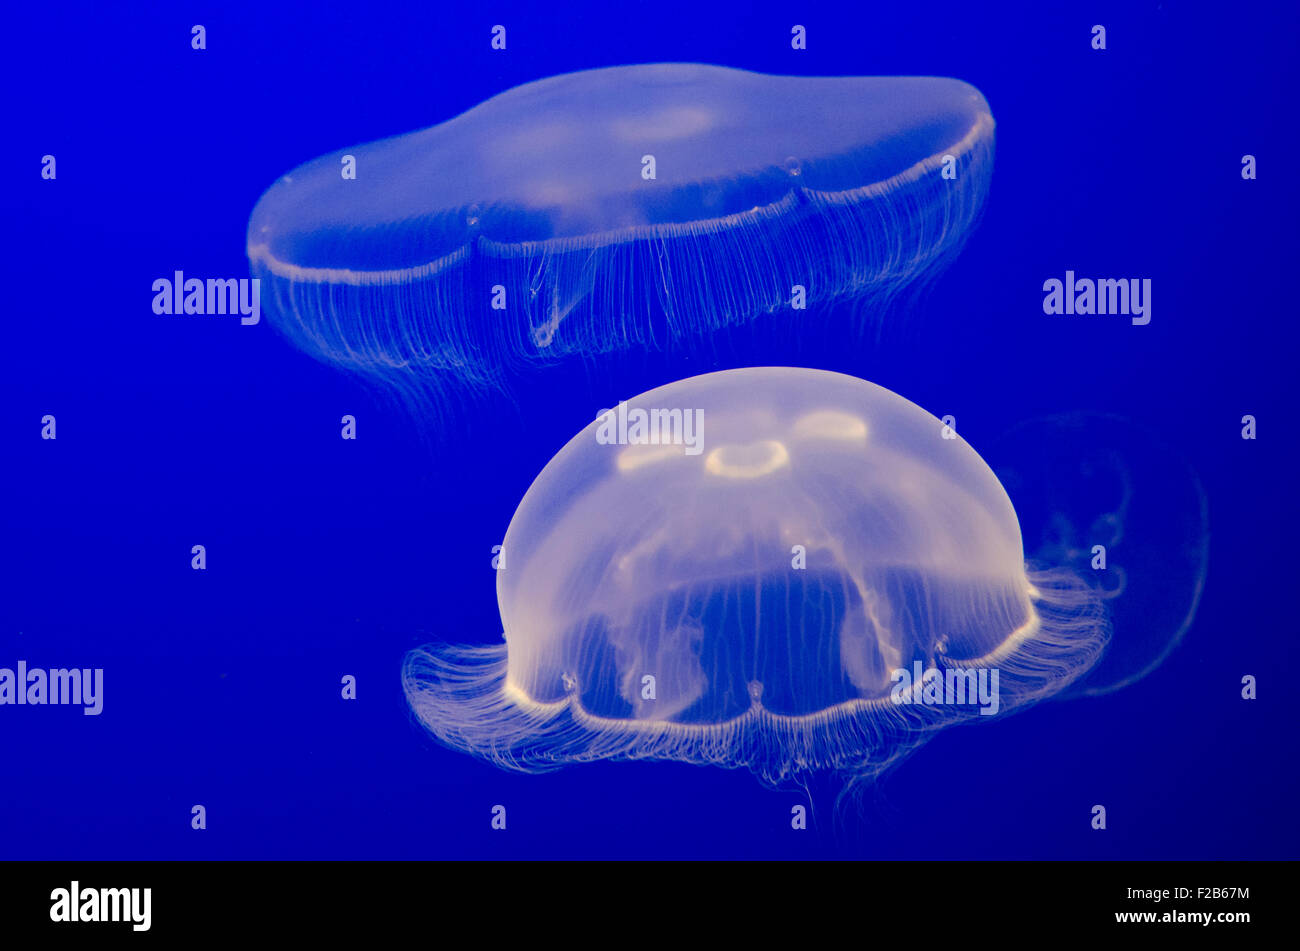 Aurelia aurita cautivos, también llamado la luna jelly, luna, medusas Medusas, común o platillo jelly, Monterey Bay Aquarium Foto de stock